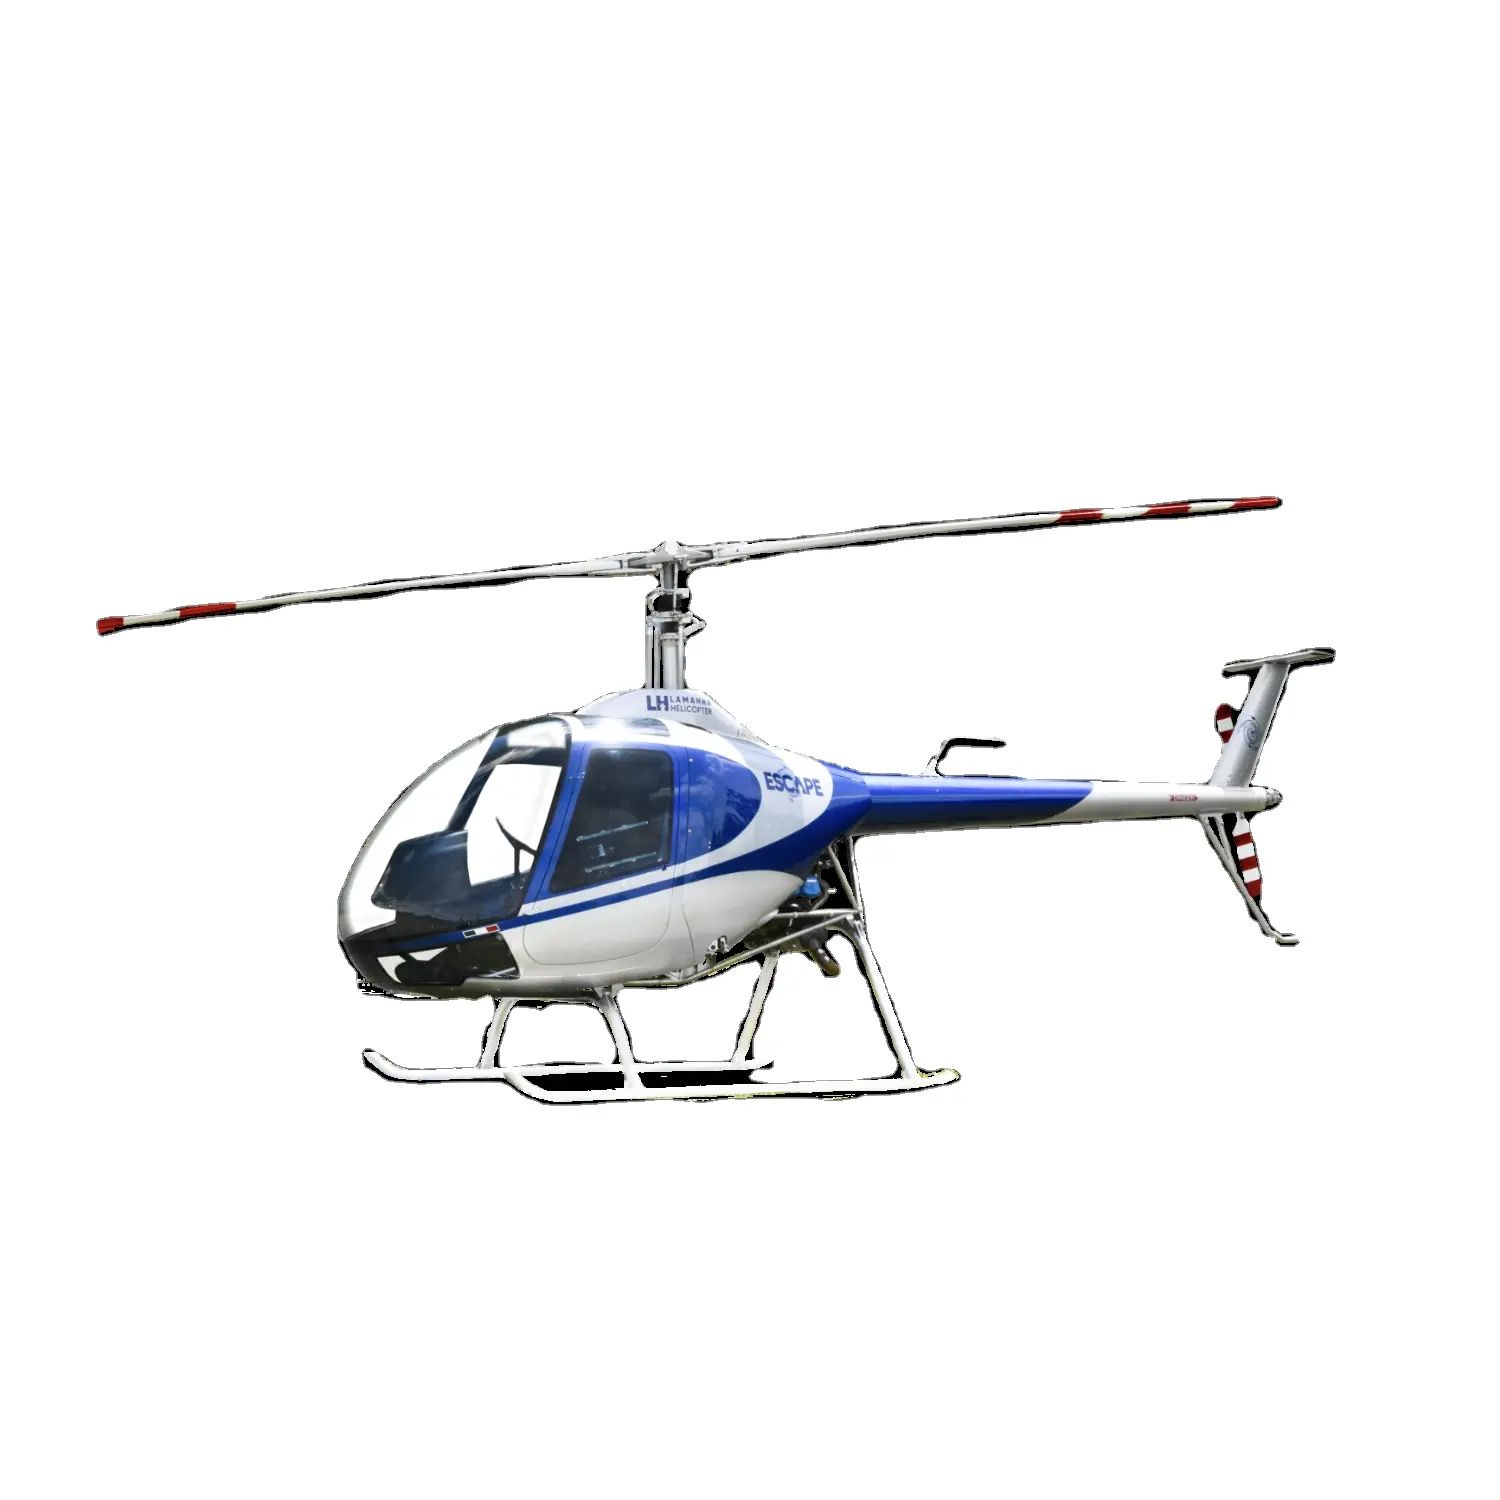 ESCAPE 선구적인 라이트 헬리콥터 시리즈-절묘한 항공 디자인 장인 정신-뛰어난 항공 도전에 직면